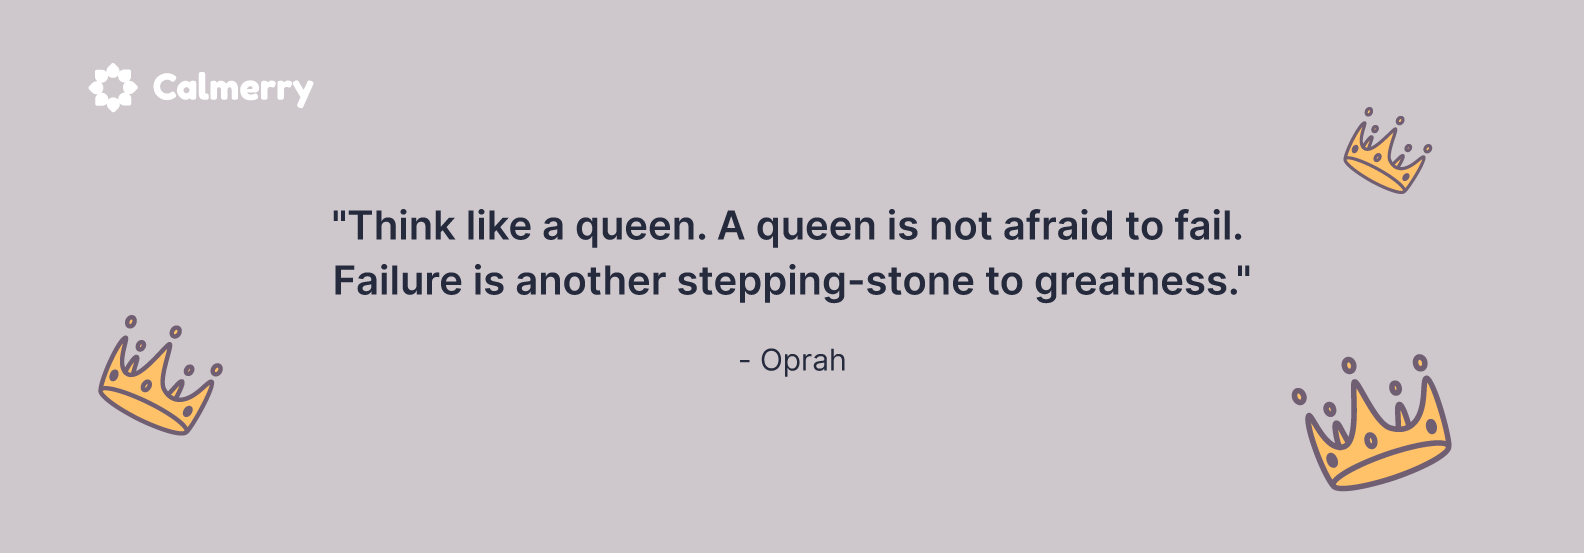 failure quote oprah